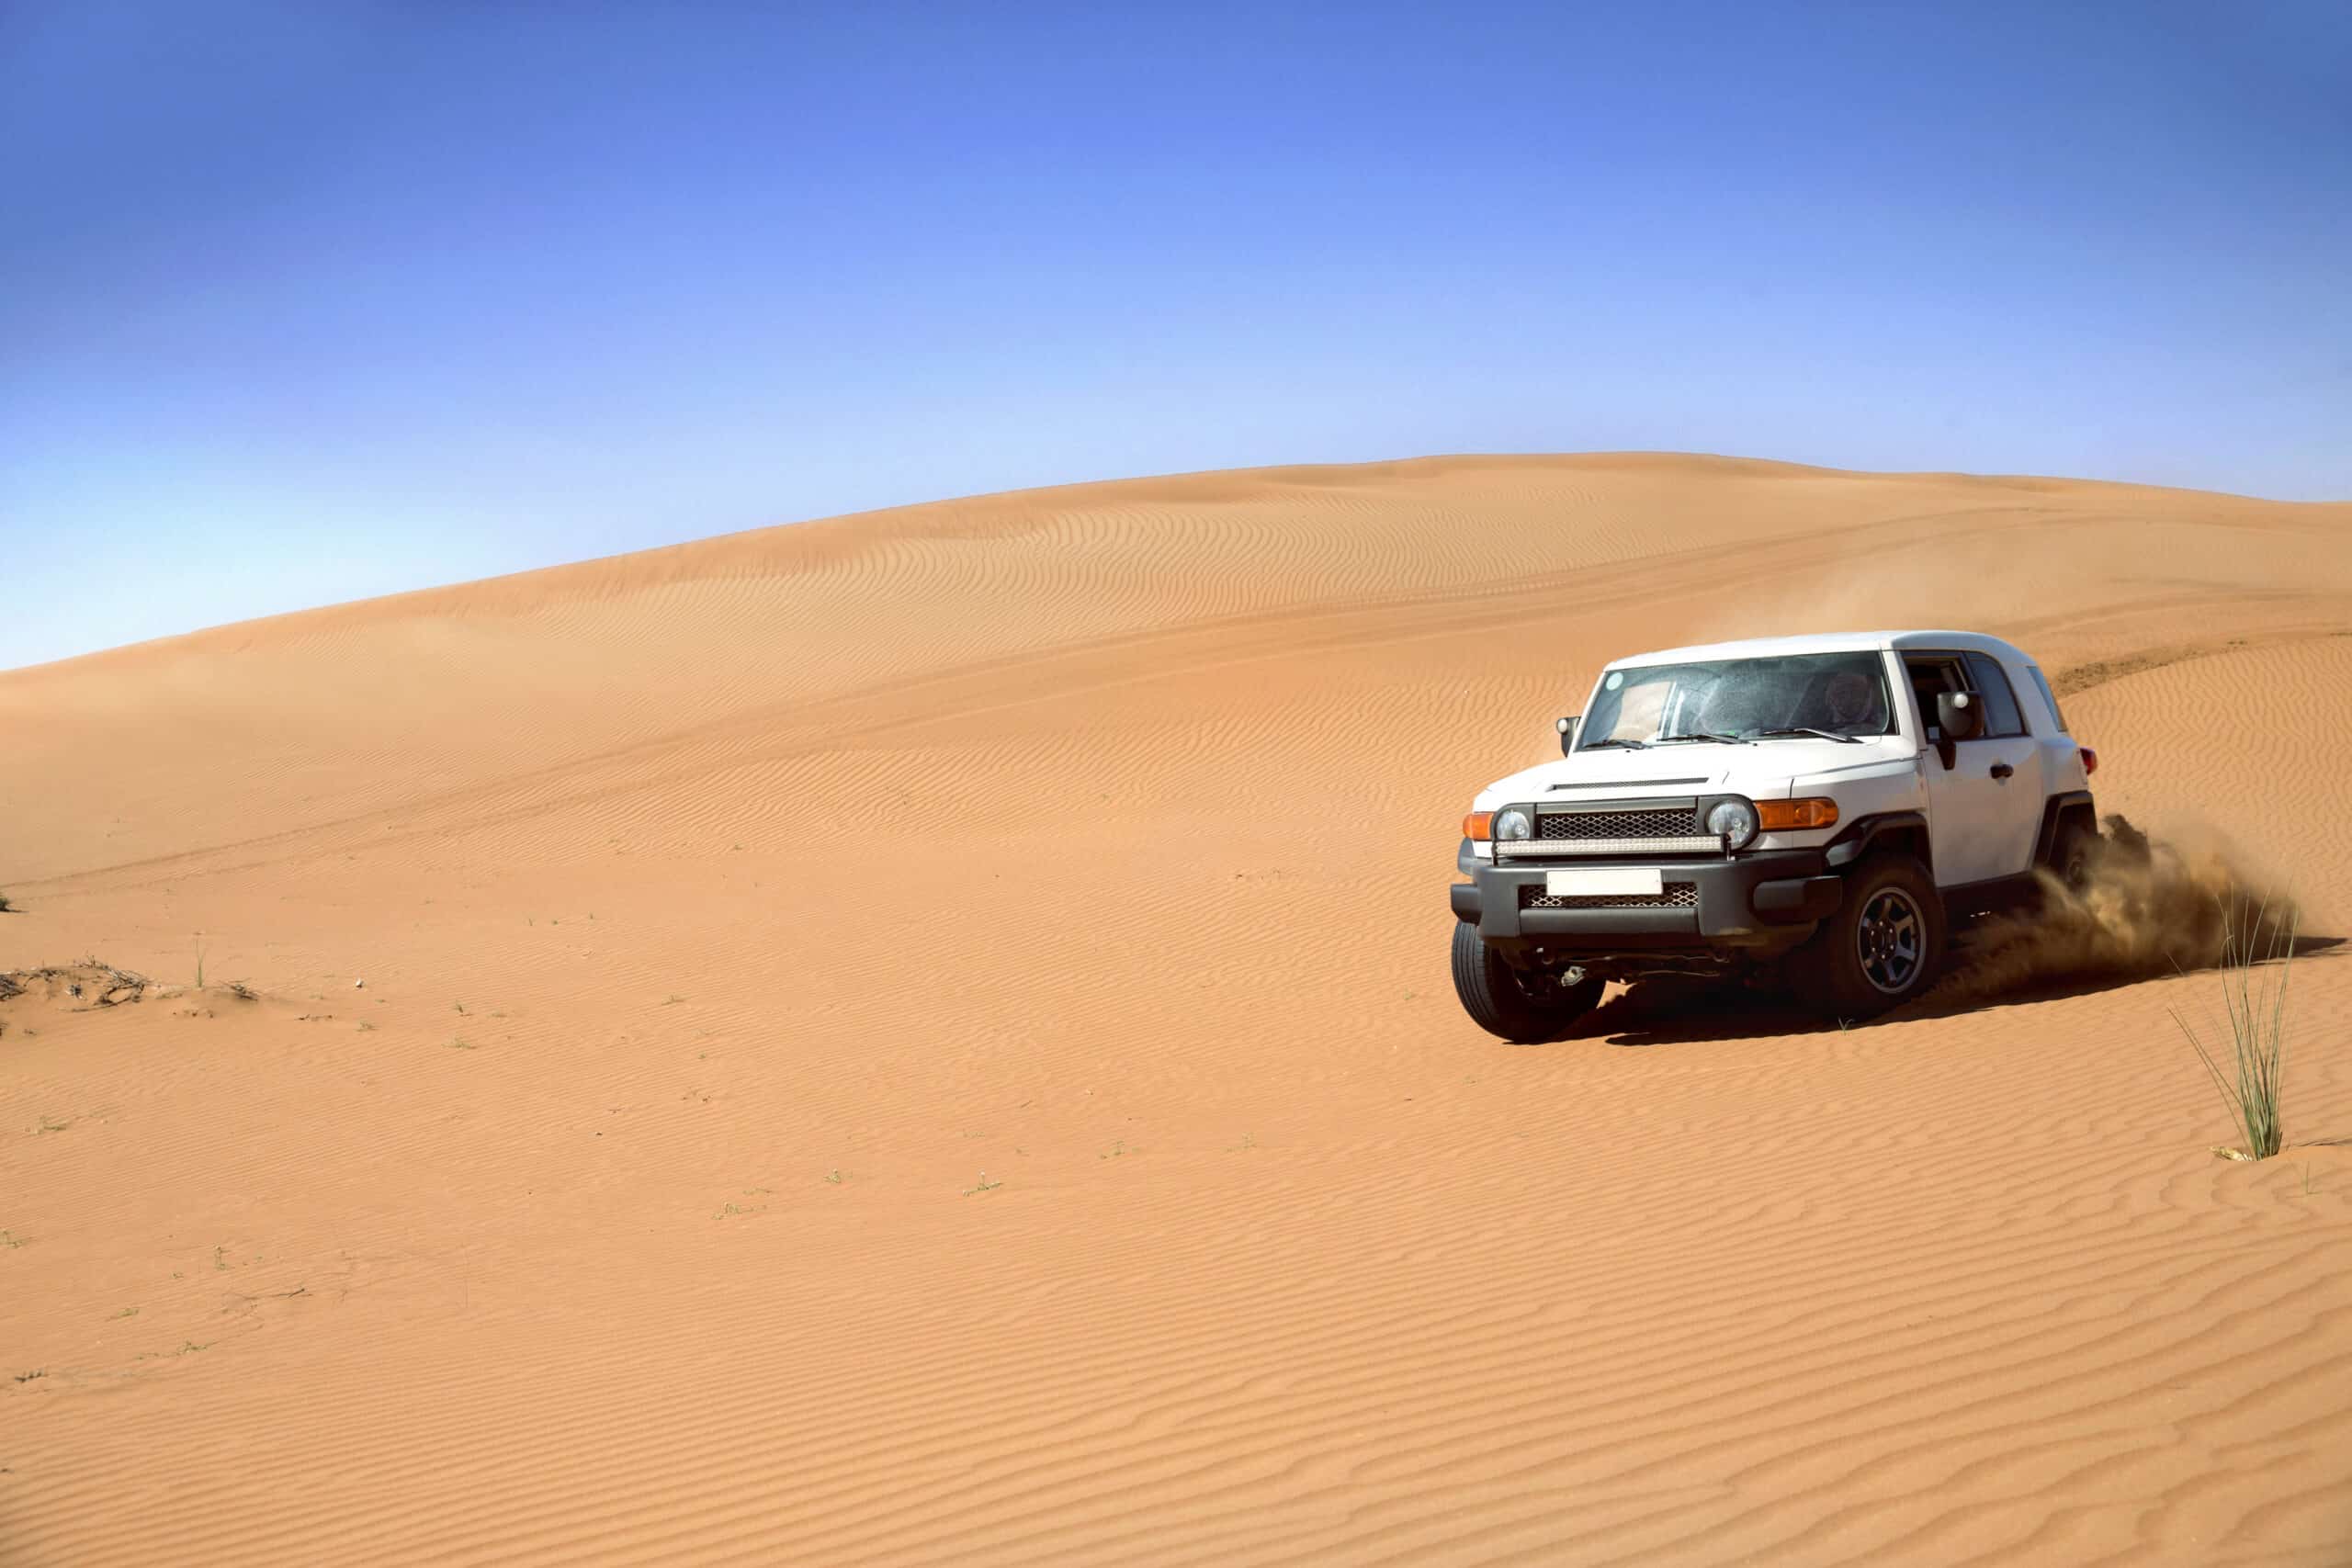 Ein weißer SUV fährt unter einem klaren blauen Himmel durch eine sandige Wüstenlandschaft und wirbelt dabei Sand auf. © Fotografie Tomas Rodriguez